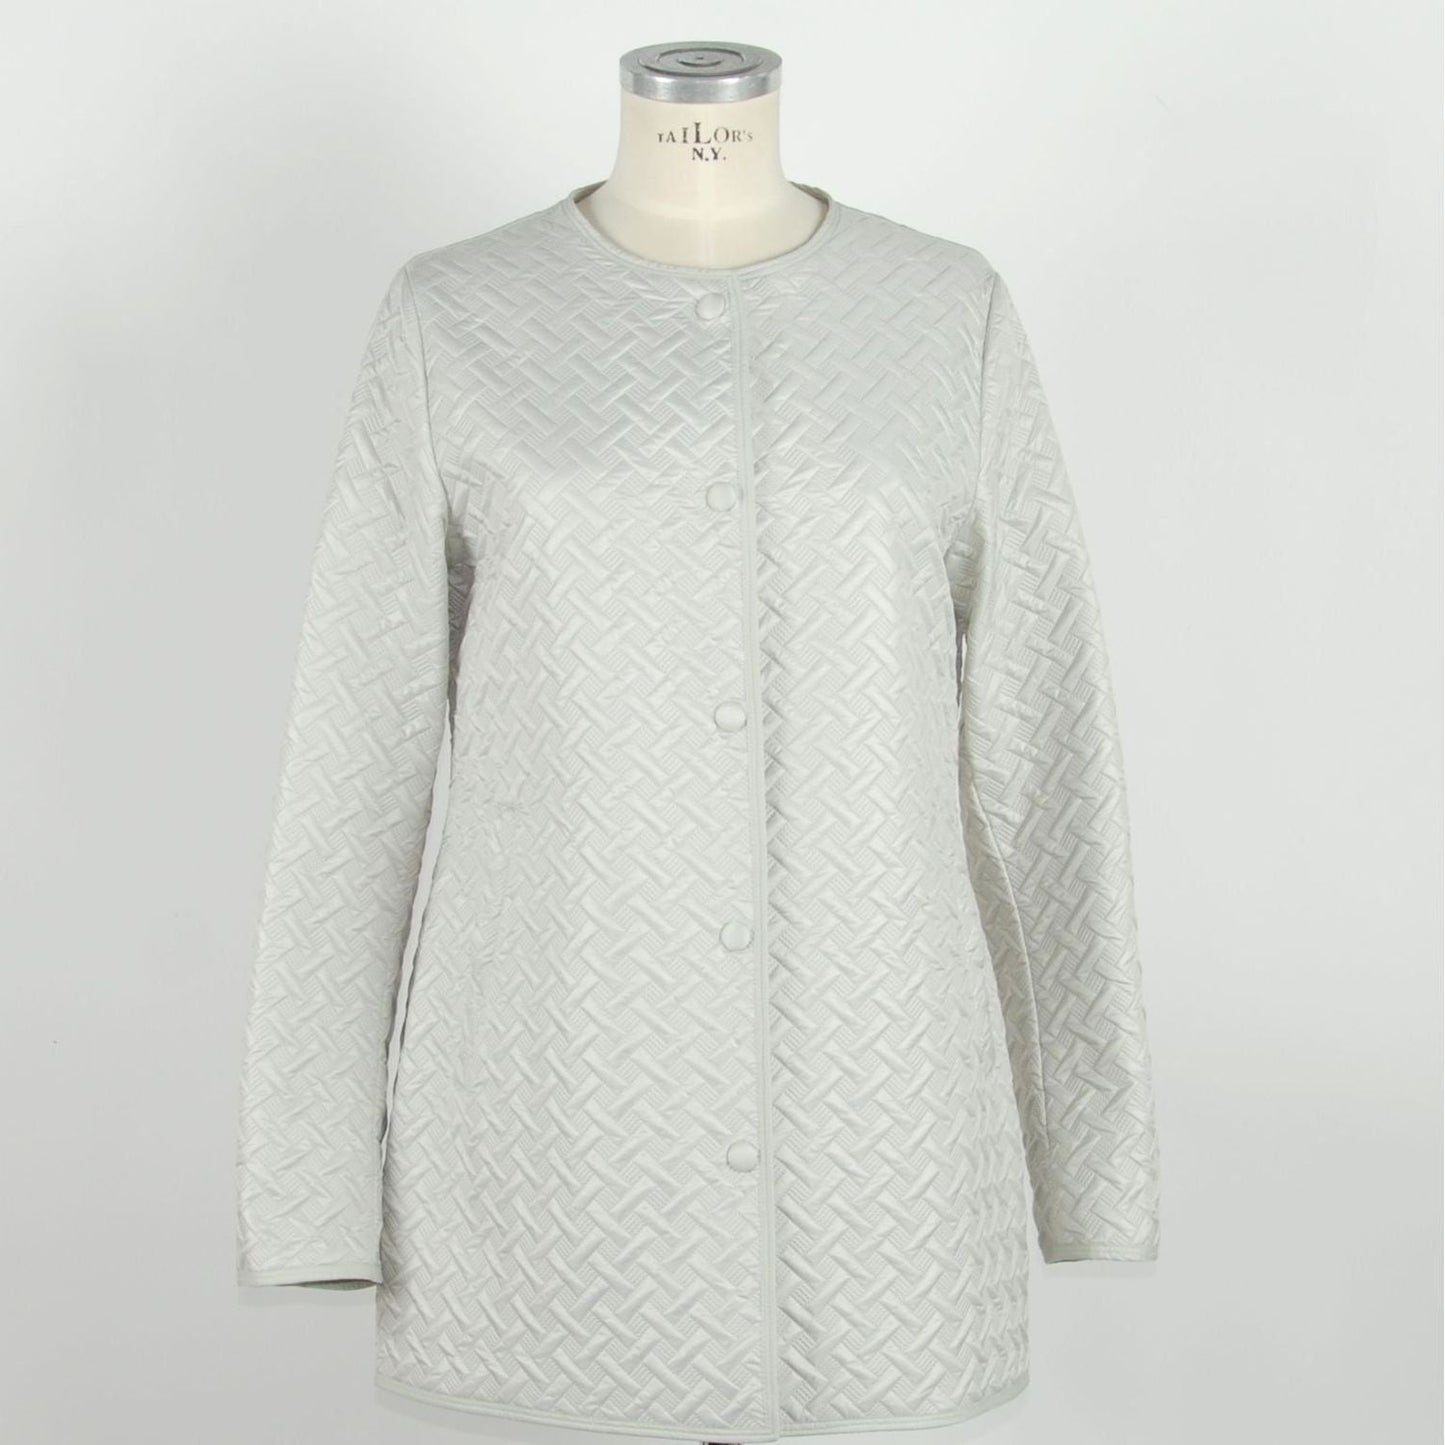 Emilio Romanelli Elegant White Snap Button Jacket white-polyester-jackets-coat-4 stock_product_image_957_1832608131-1-c0fa9298-609.jpg